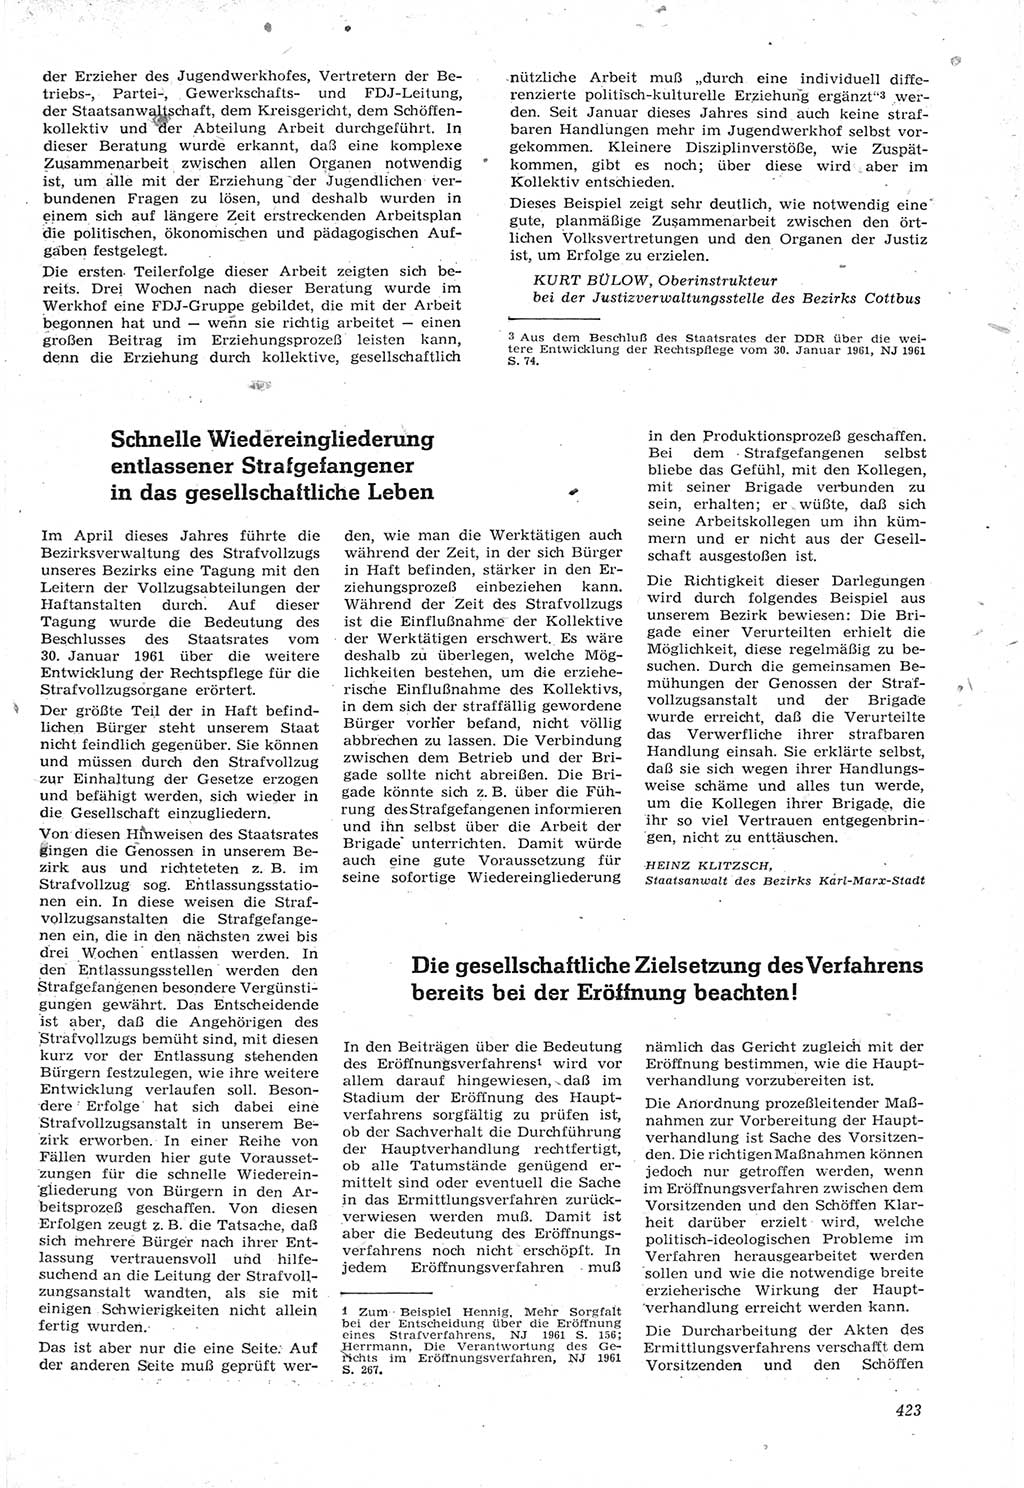 Neue Justiz (NJ), Zeitschrift für Recht und Rechtswissenschaft [Deutsche Demokratische Republik (DDR)], 15. Jahrgang 1961, Seite 423 (NJ DDR 1961, S. 423)